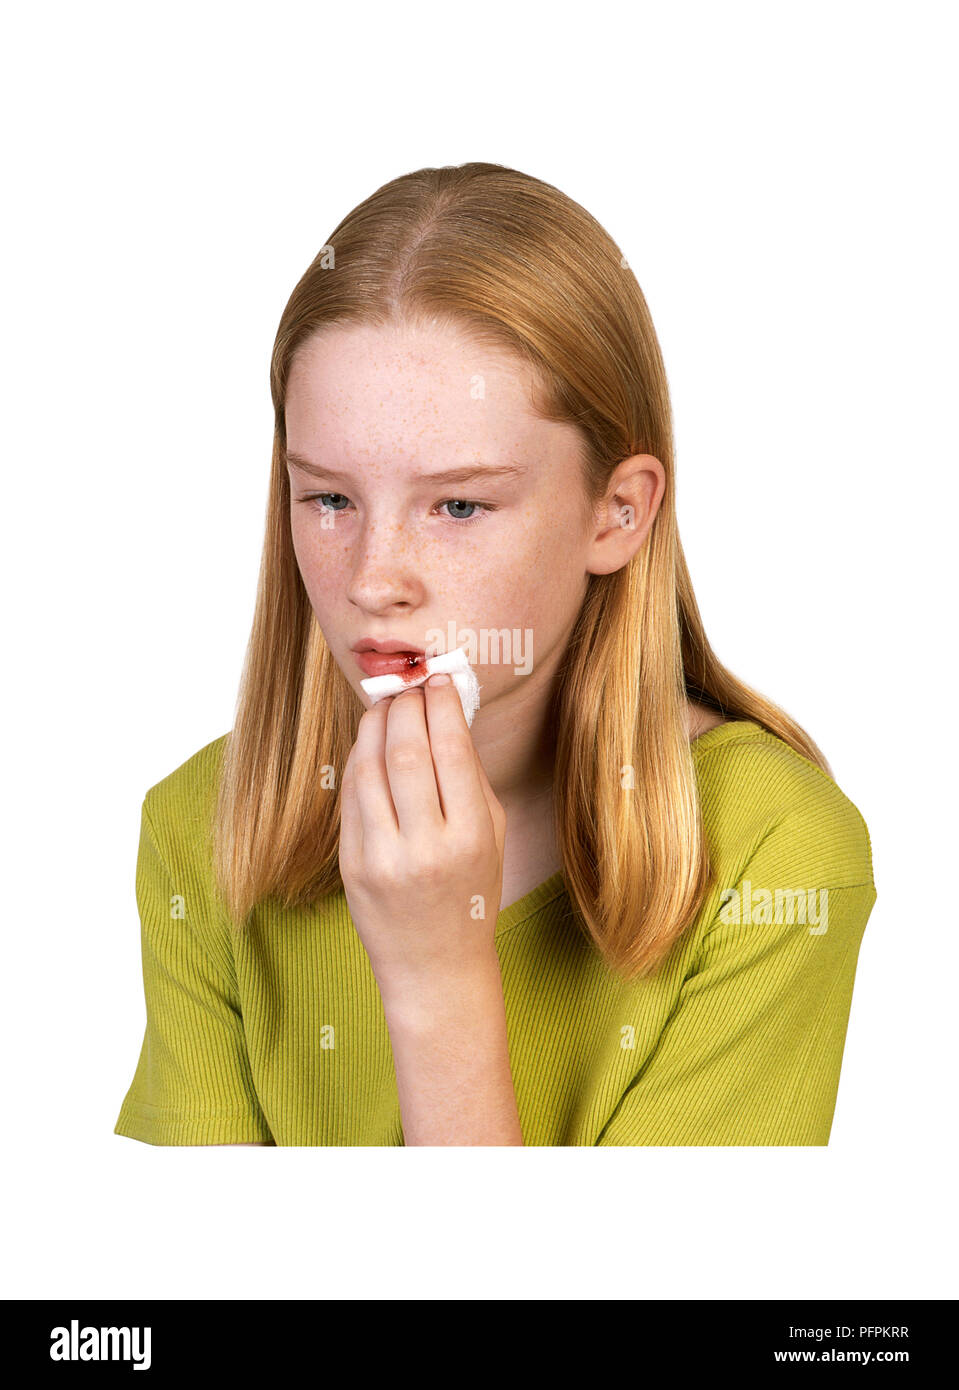 Girl holding sur les lèvres des saignements des tissus Banque D'Images